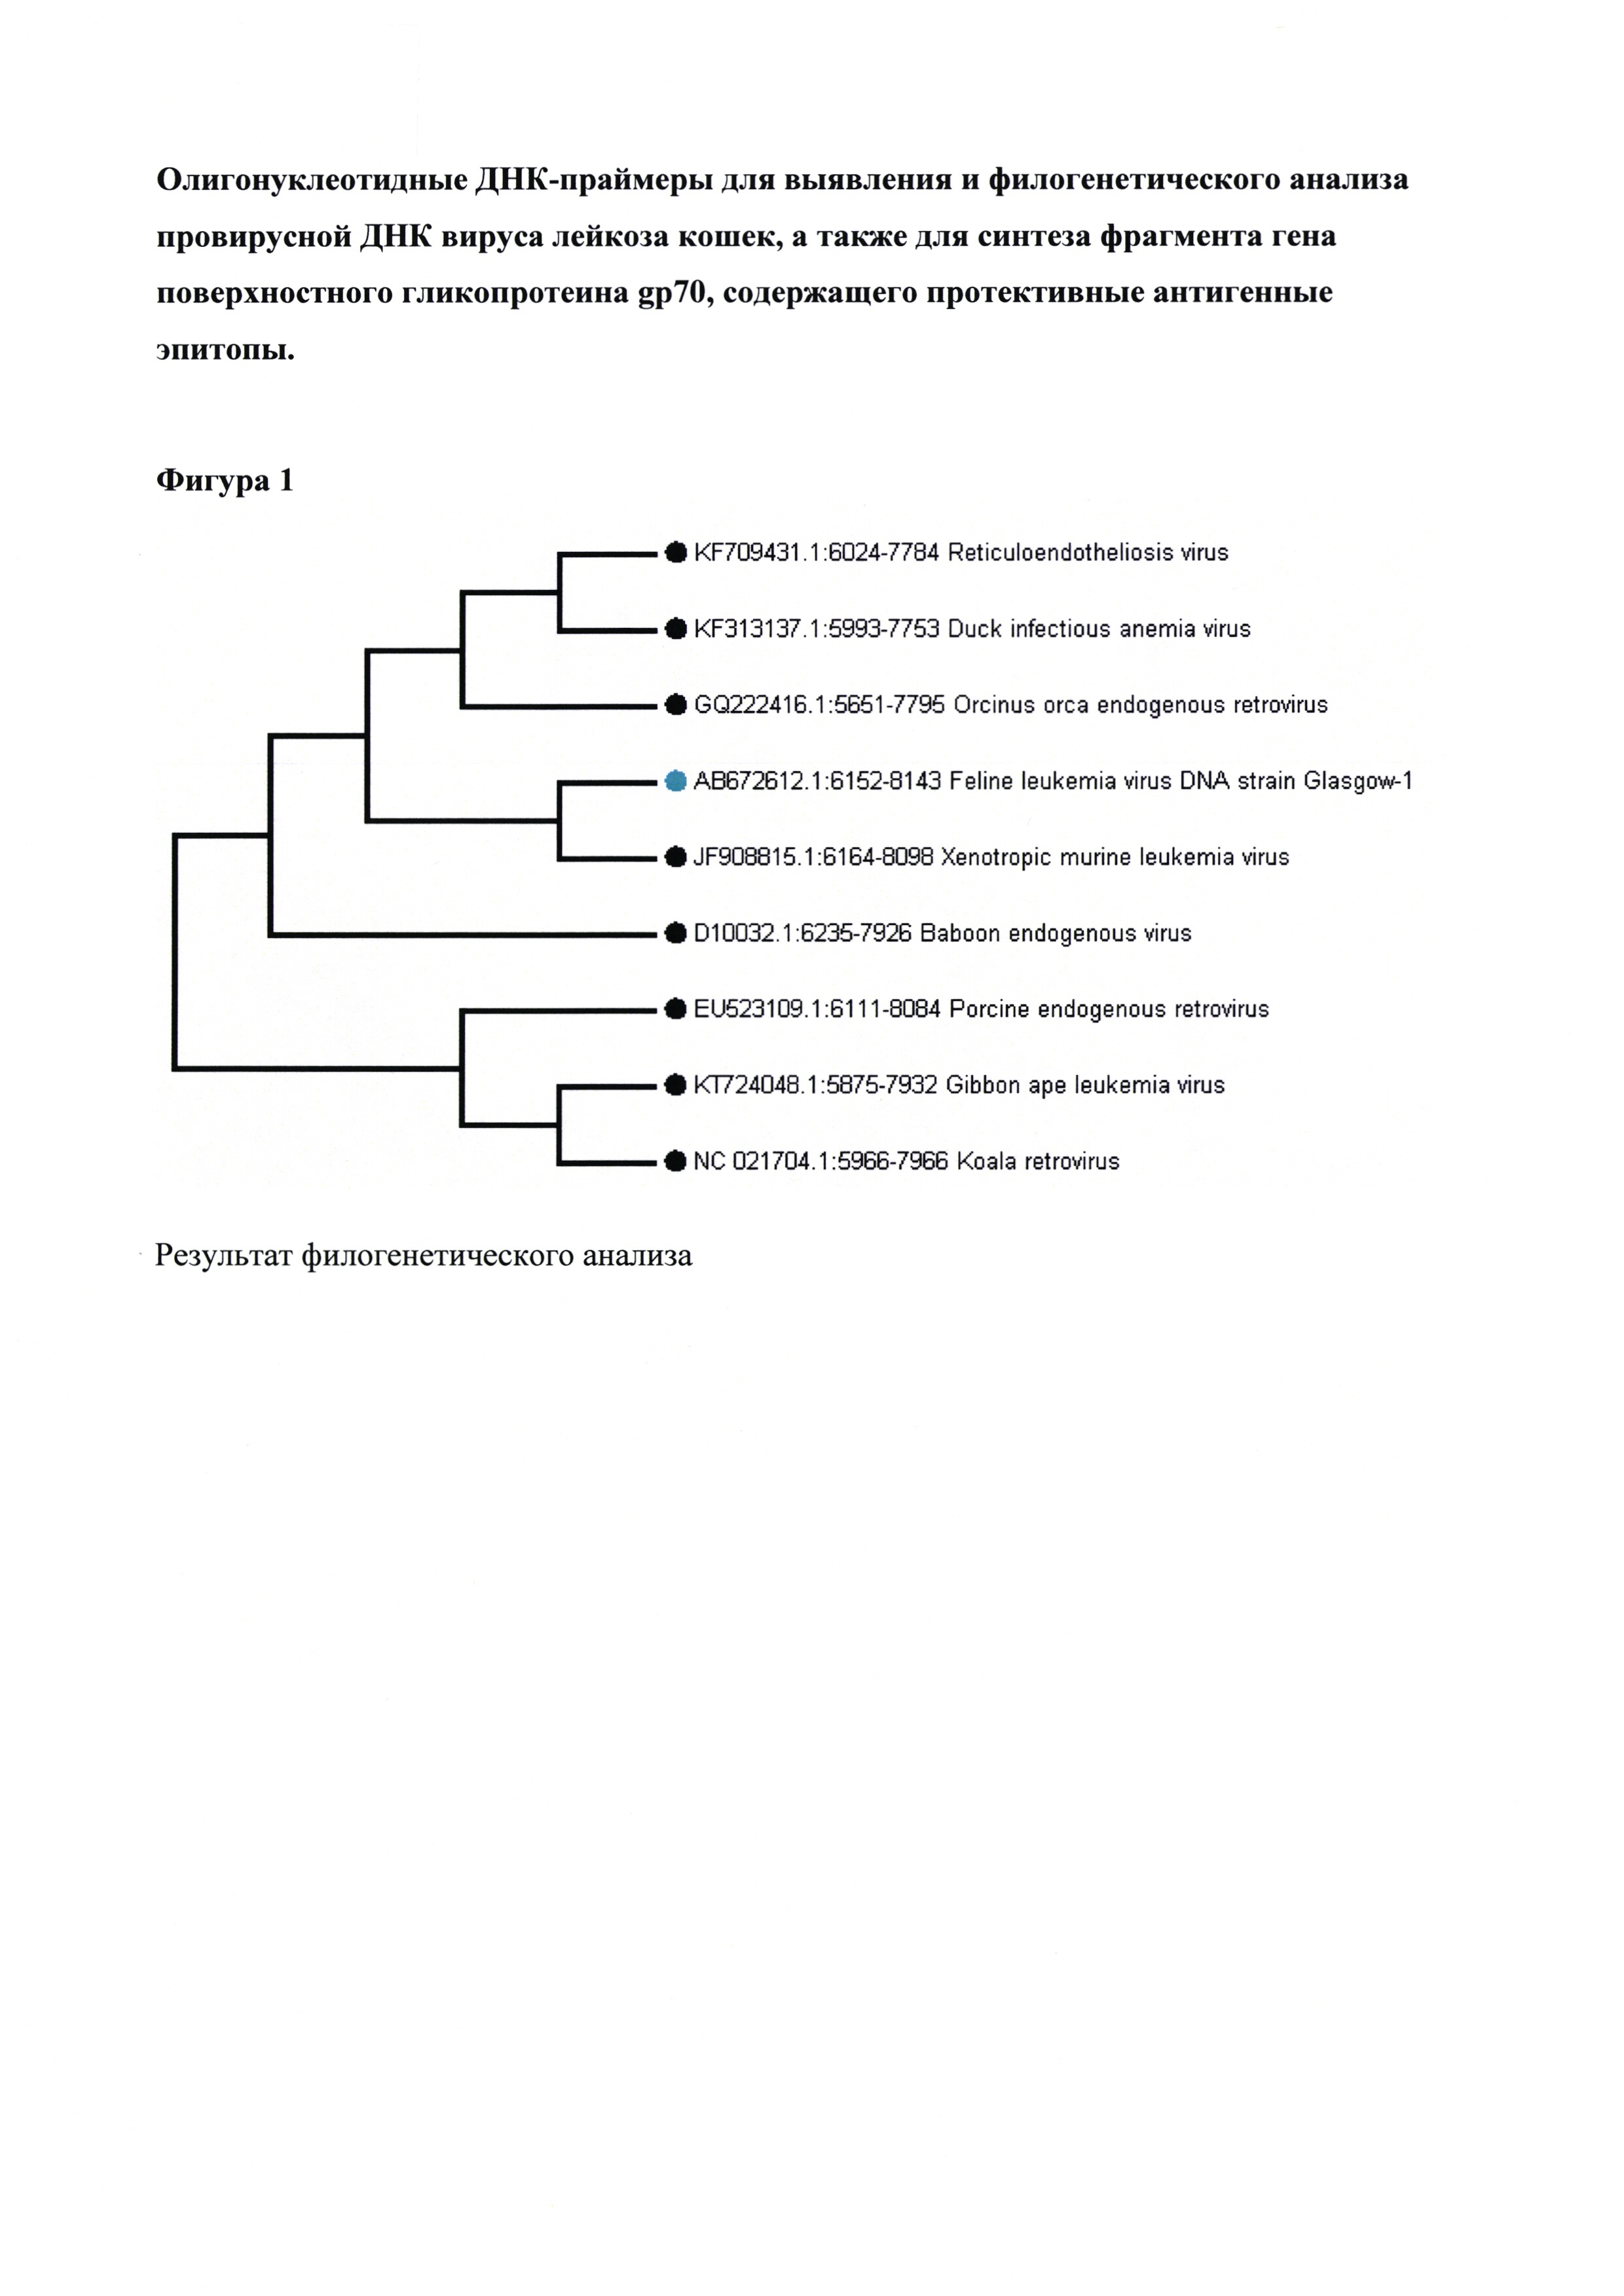 Олигонуклеотидные ДНК праймеры для выявления и филогенетического анализа провирусной ДНК вируса лейкоза кошек, а также для синтеза фрагмента гена поверхностного гликопротеина gp70, содержащего протективные антигенные эпитопы